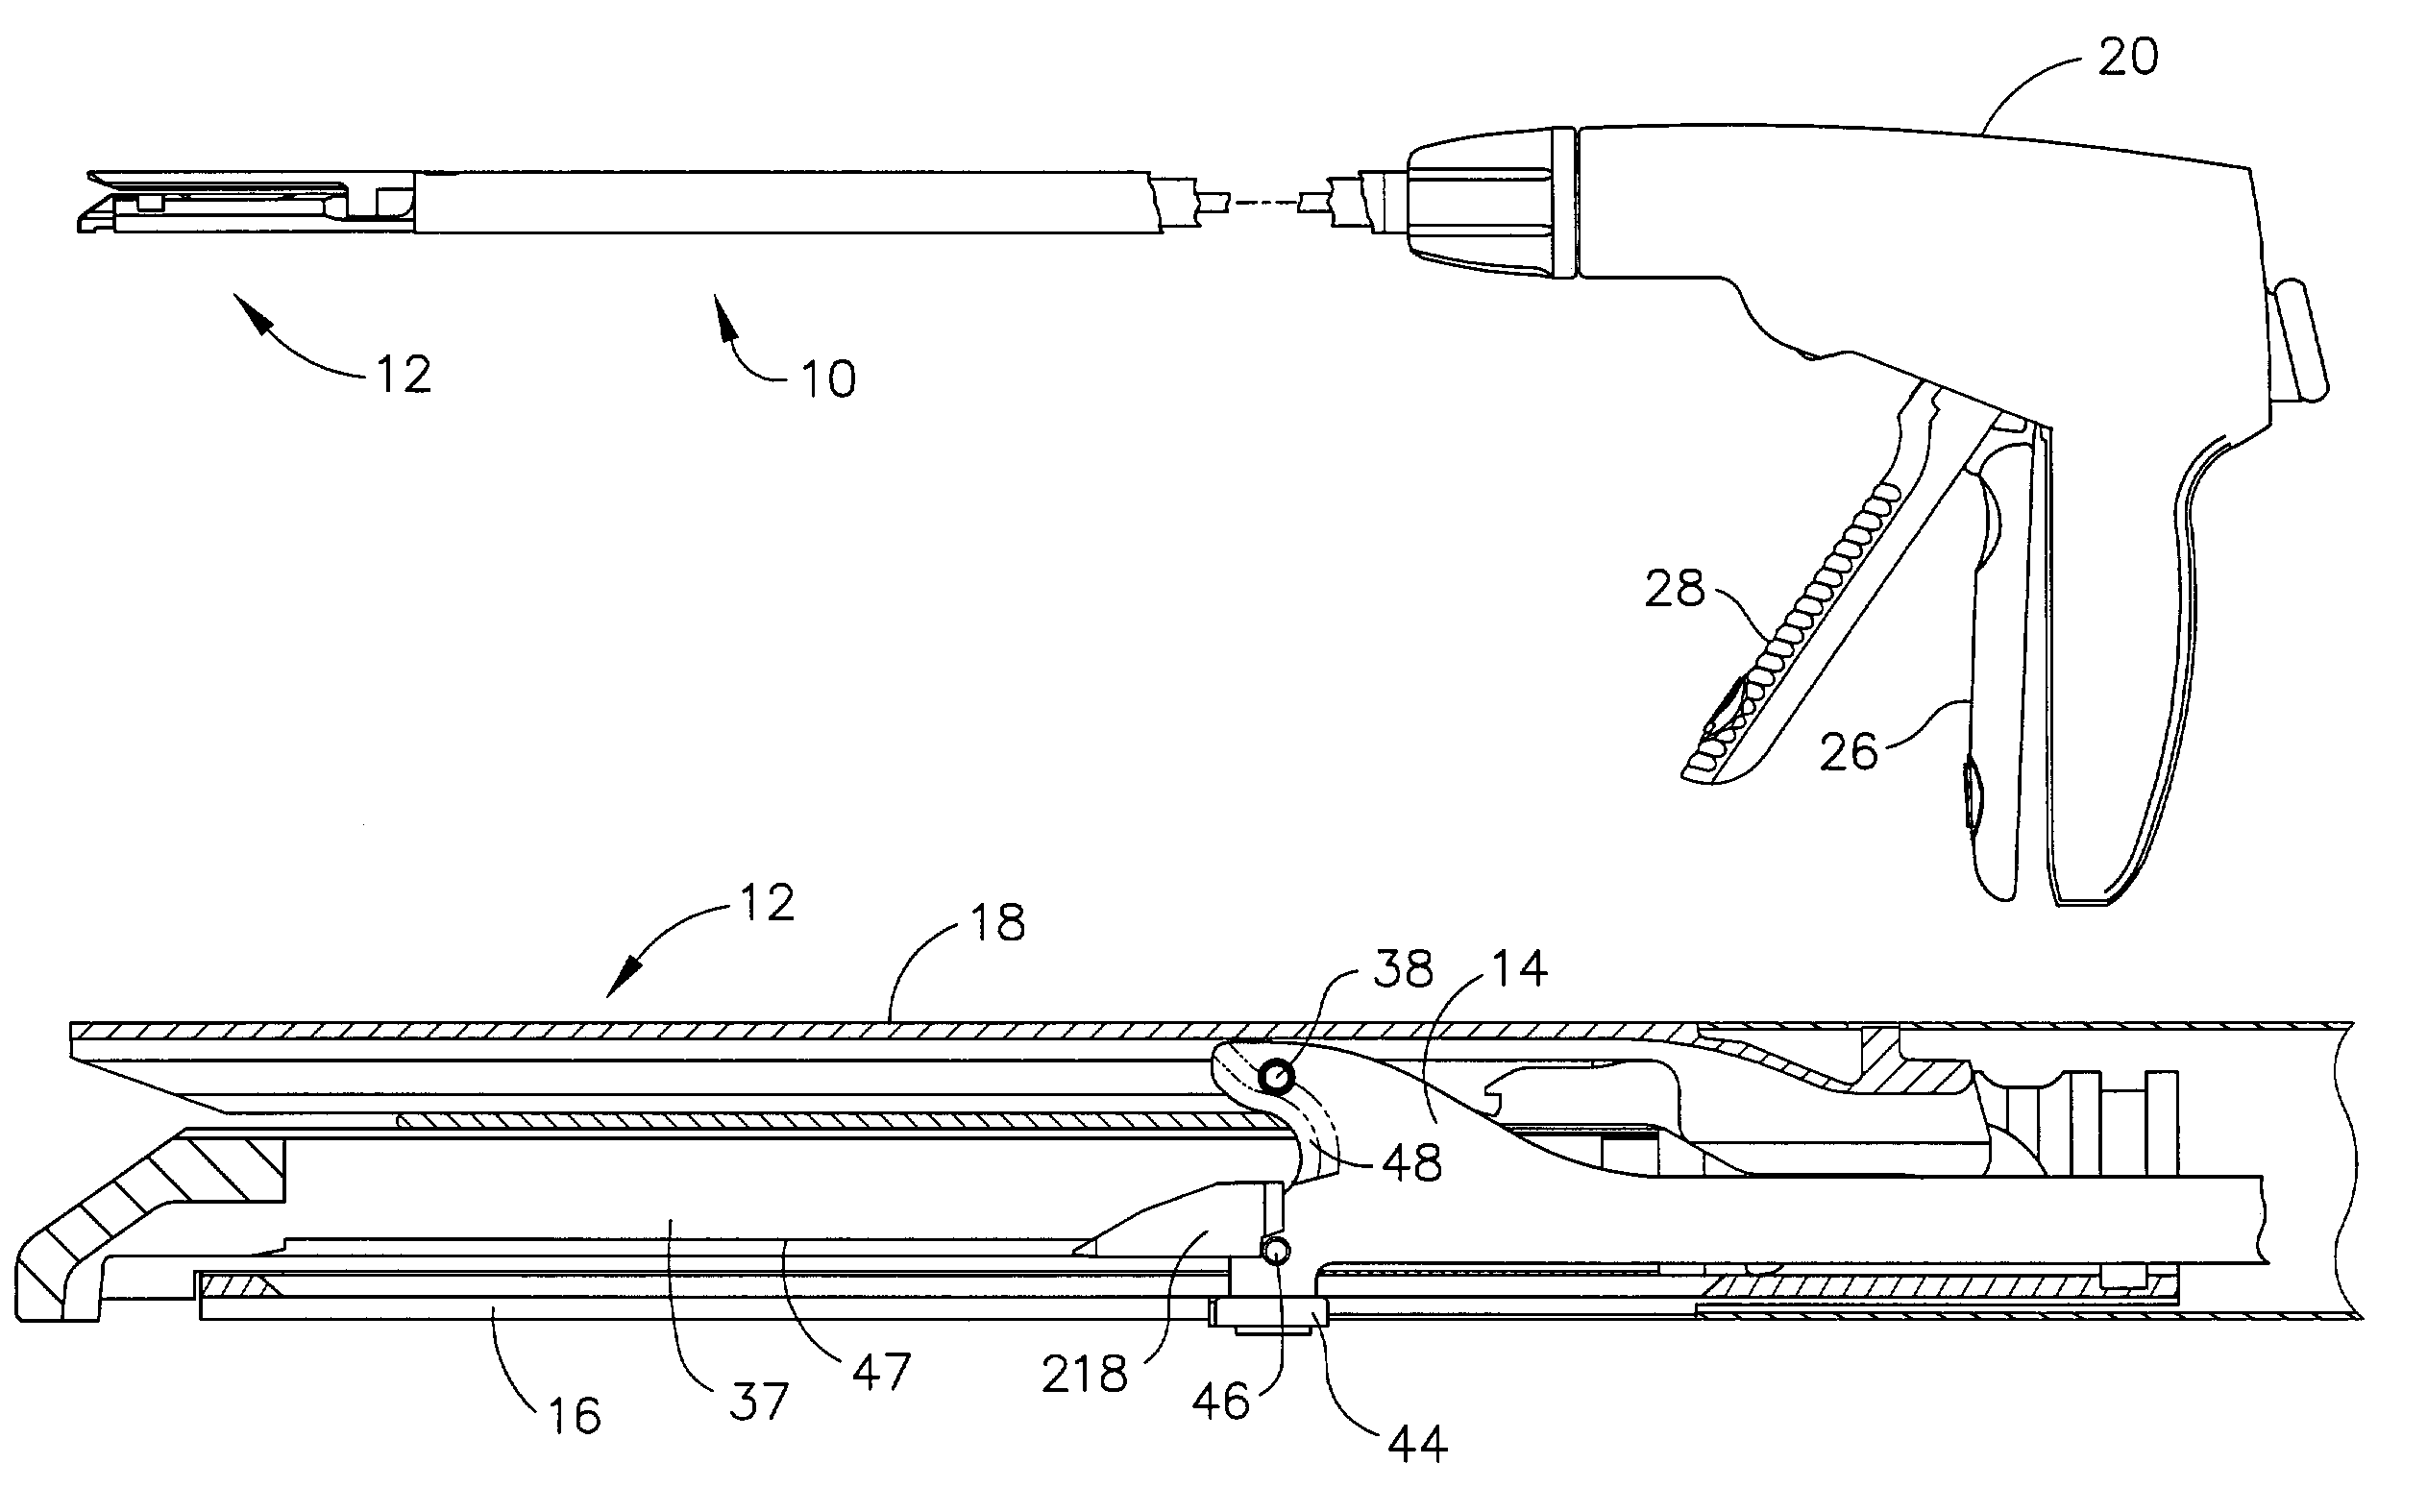 Surgical stapling instrument incorporating an E-beam firing mechanism